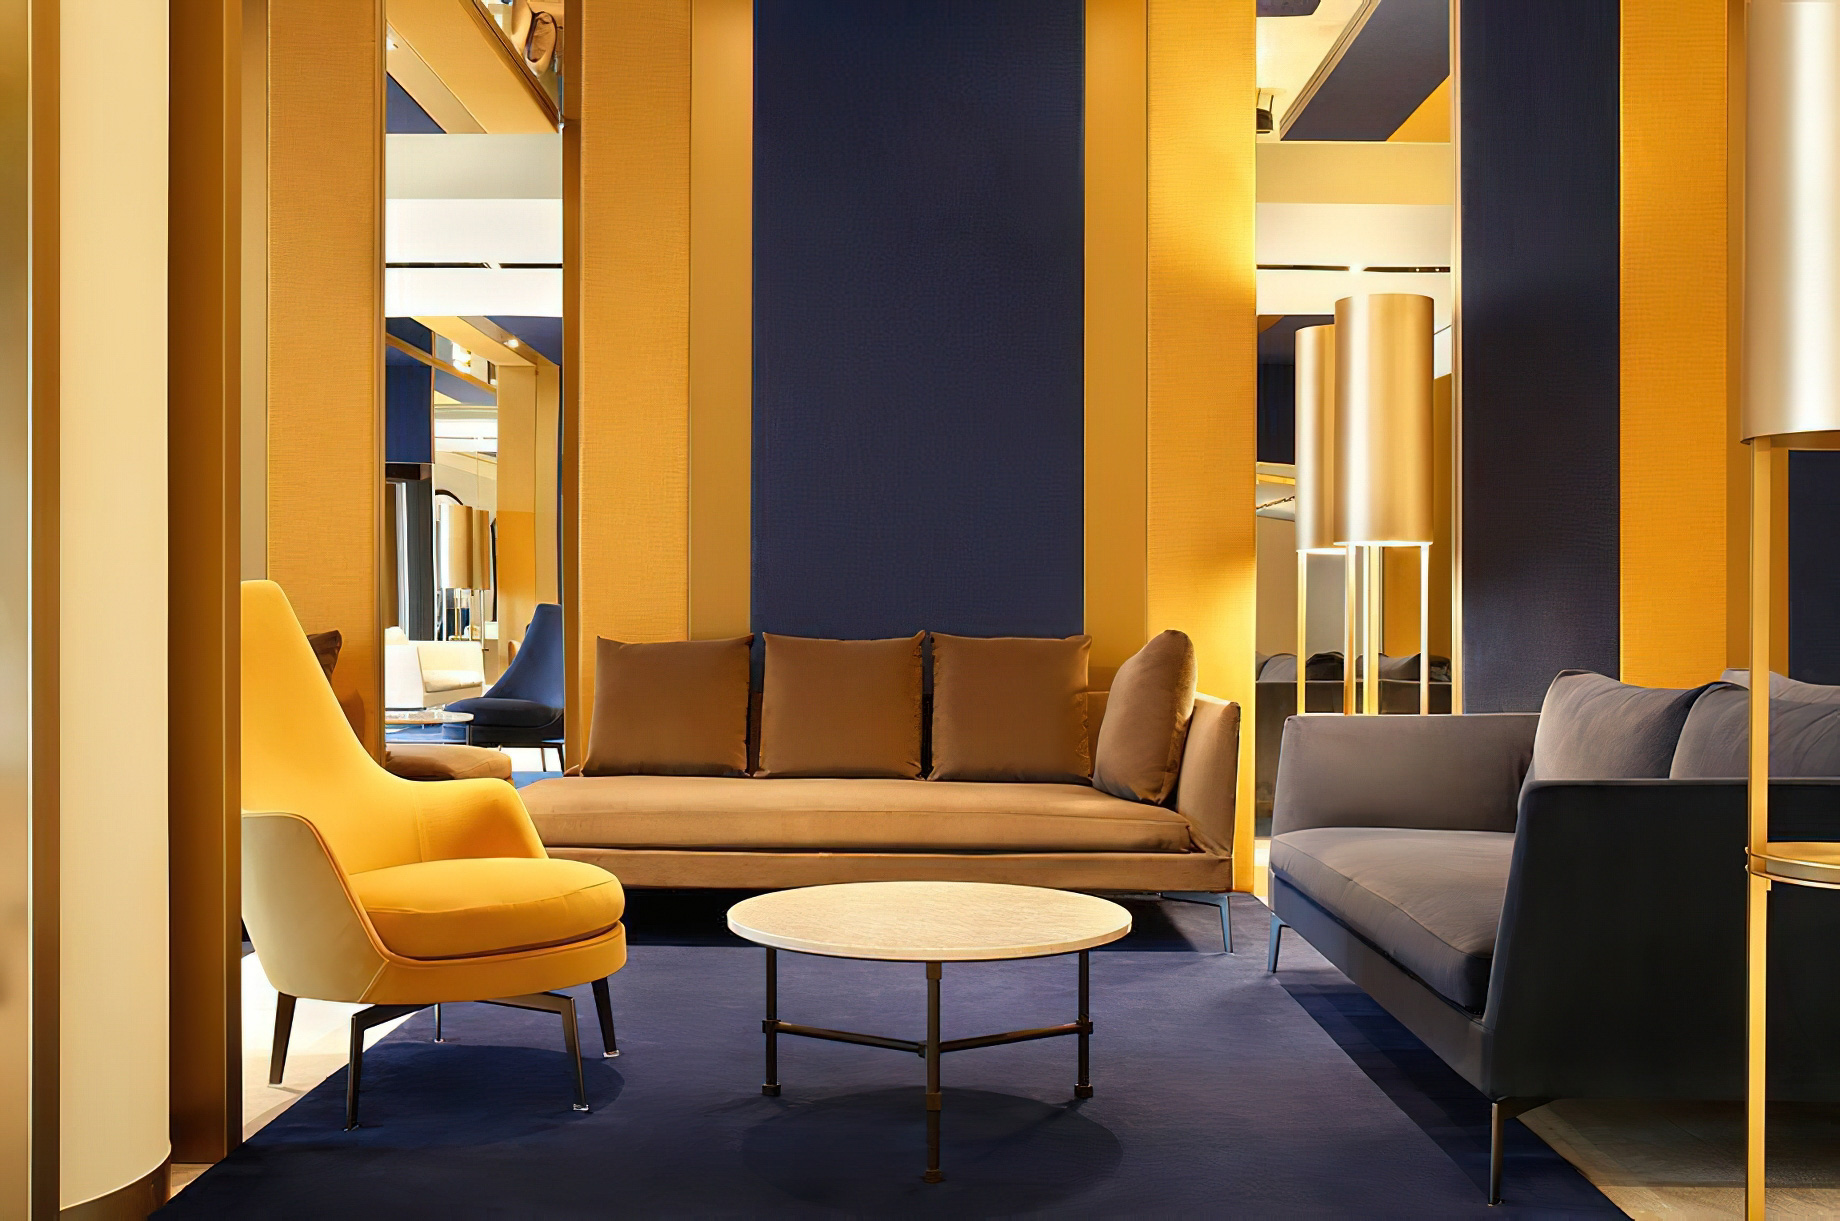 Tivoli Portopiccolo Sistiana Resort & Spa – Sistiana, Italy – Lobby Lounge